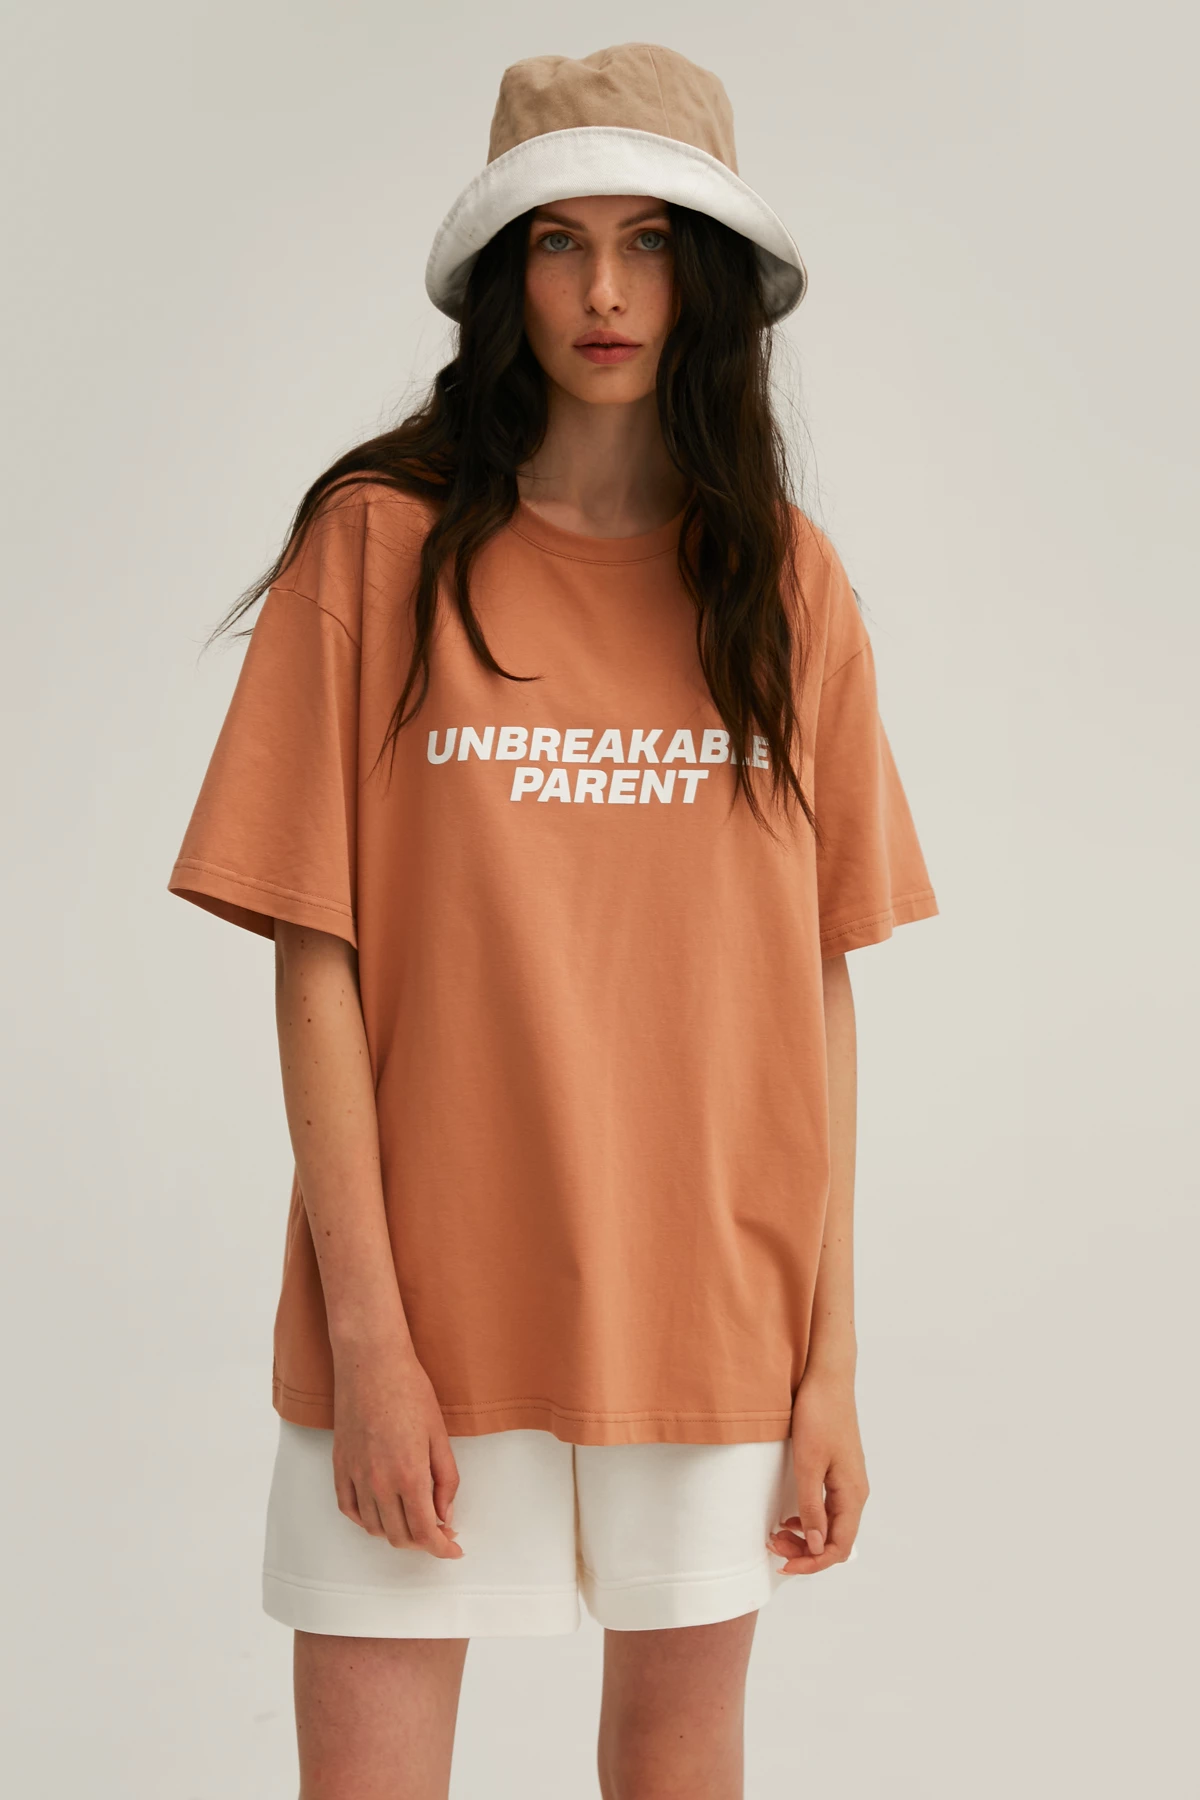 Карамельна унісекс-футболка з написом "Unbreakable parent" з трикотажу, фото 8